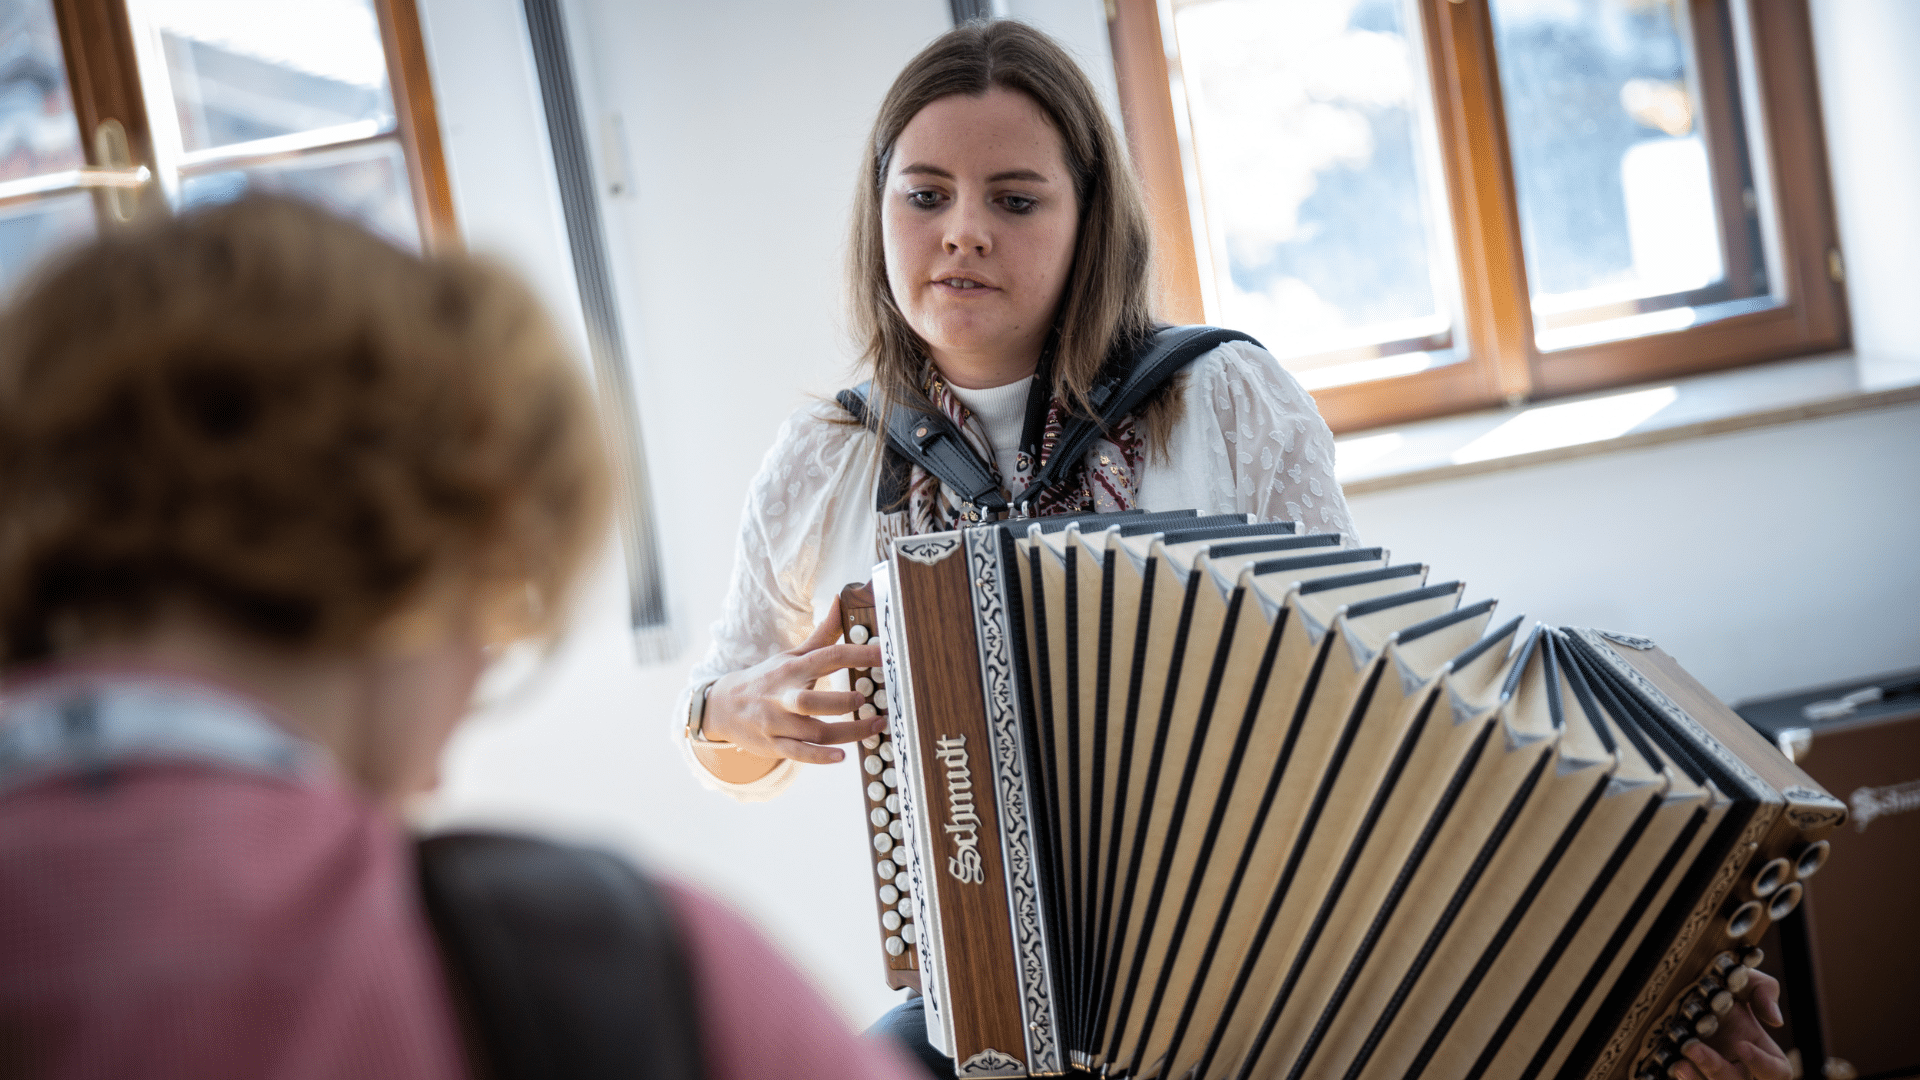 Harmonikaschülerin lernt den Bass zur Melodie auf der Steirischen